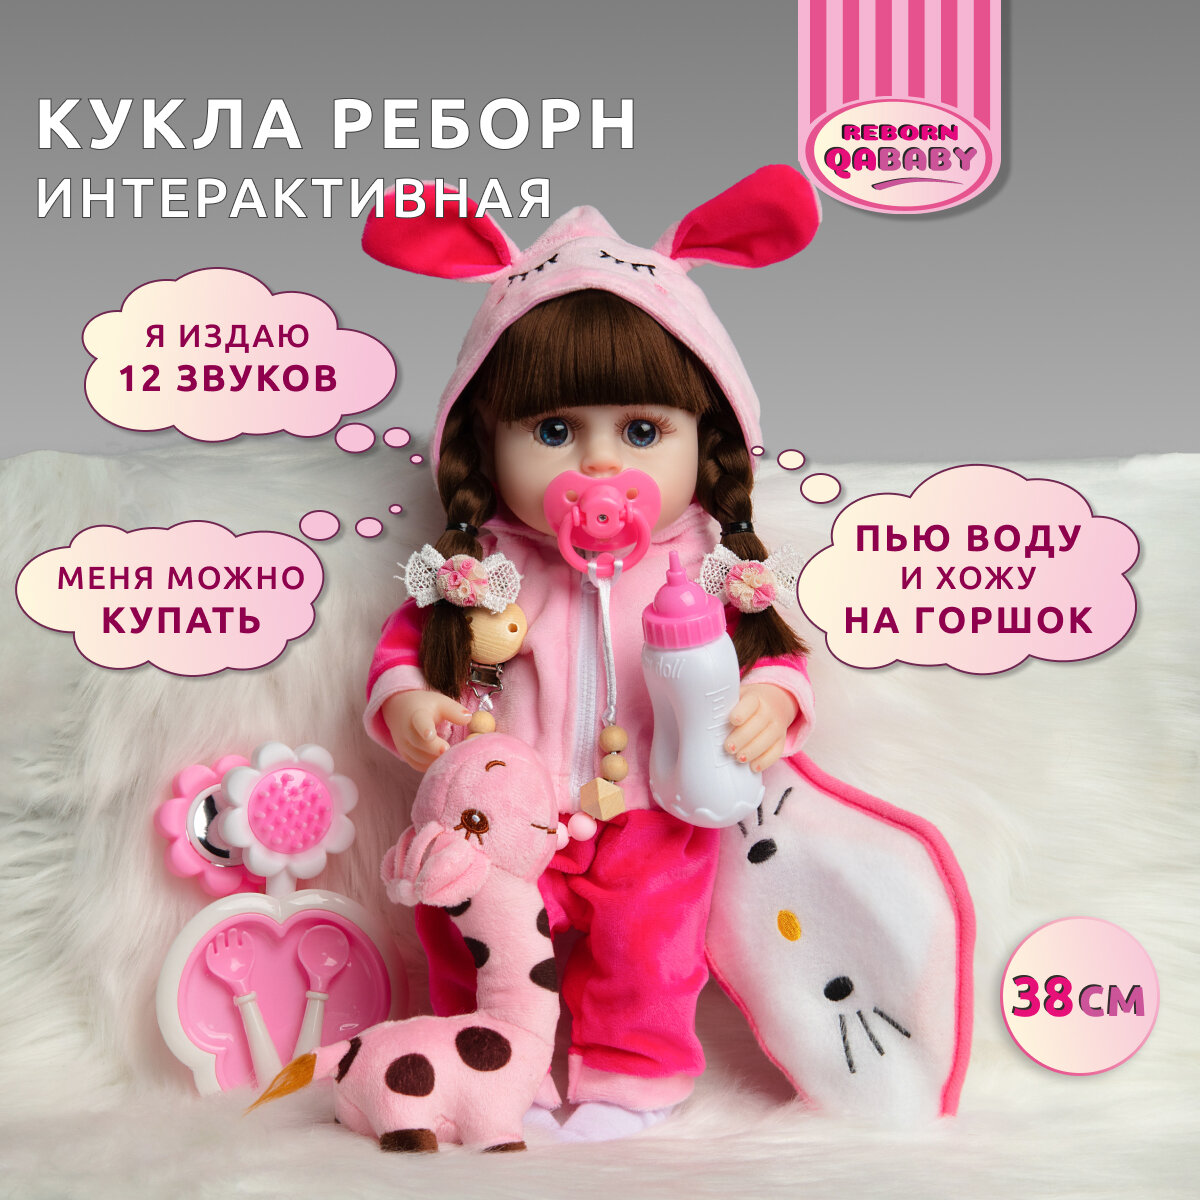 Кукла Пупс Реборн девочка Натали силиконовая интерактивная Подарок для девочки 38 см